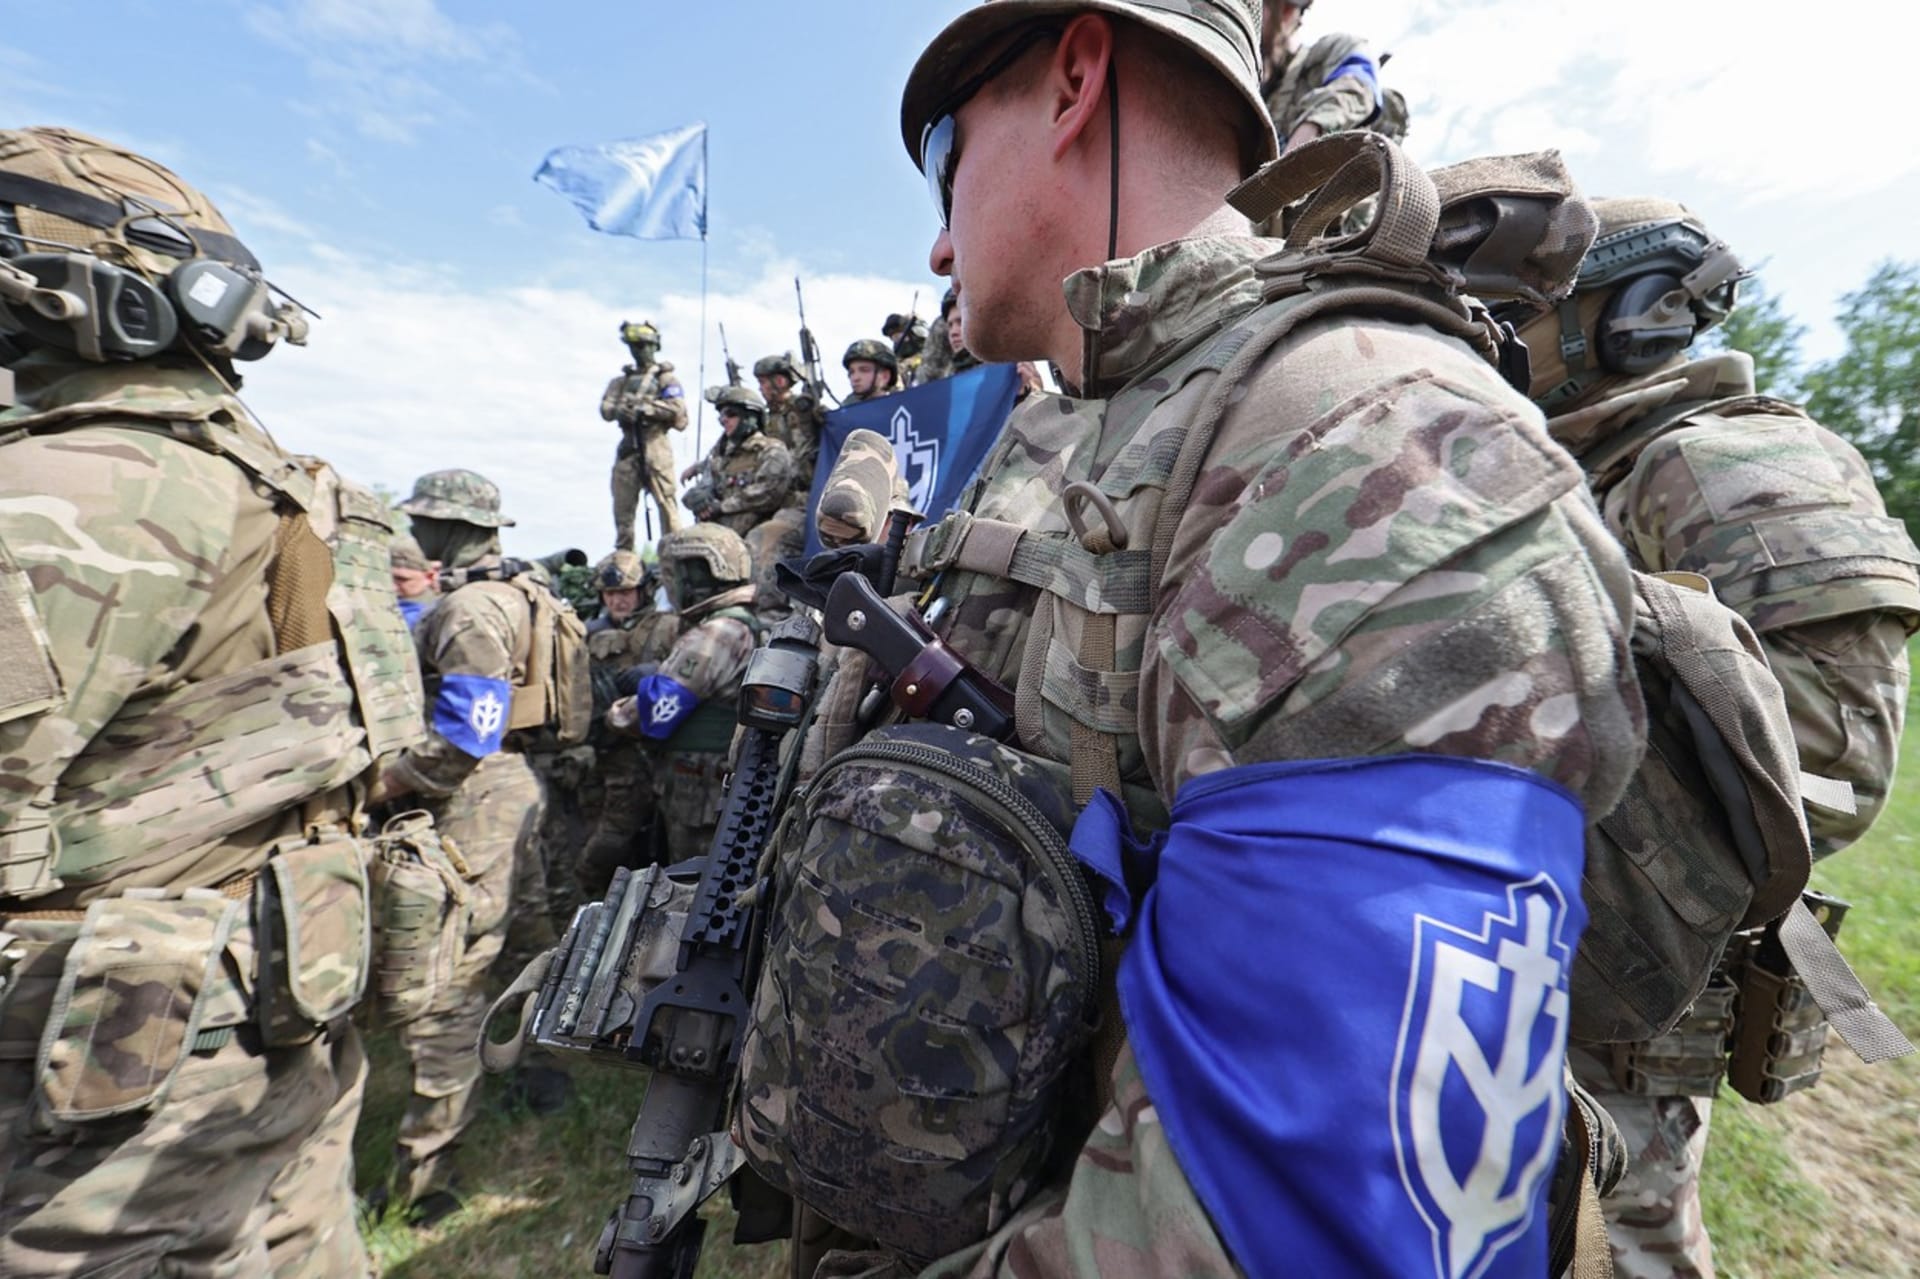 Ozbrojenci z Legie Svobodné Rusko se staví proti vládě prezidenta Vladimira Putina. Bojovali po boku Ukrajinců a nyní se pokoušejí o partyzánské akce přímo uvnitř Ruska.